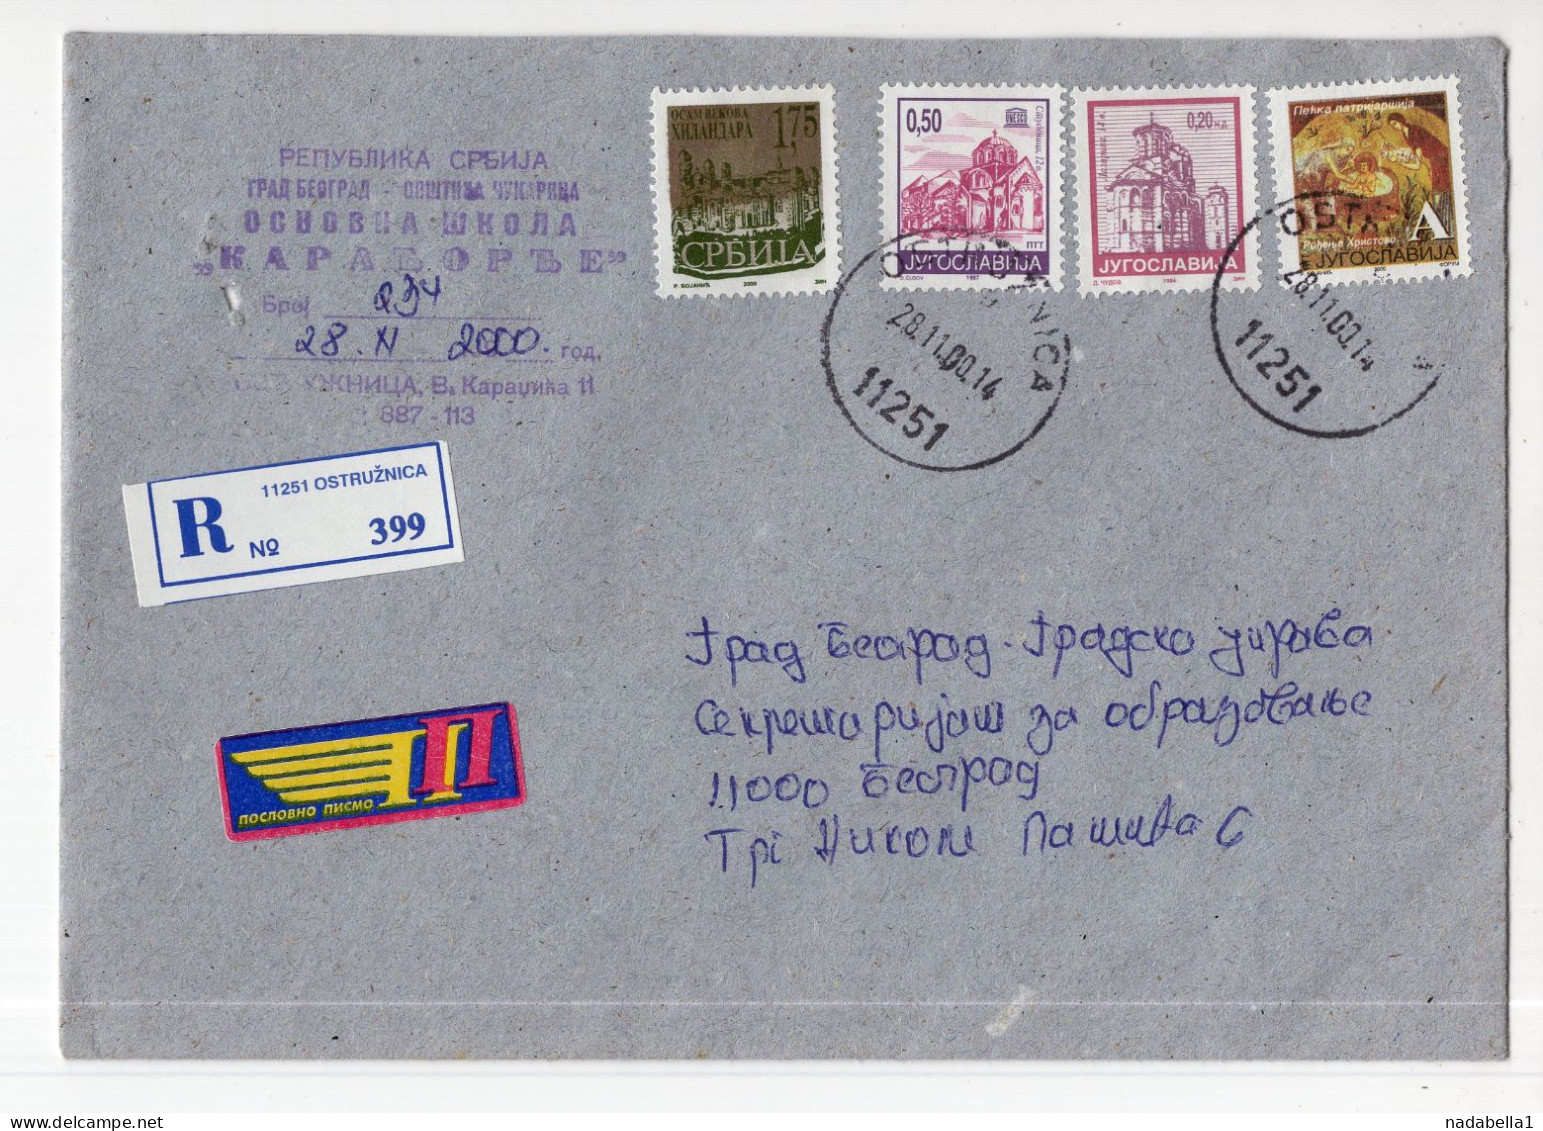 2000. YUGOSLAVIA,SERBIA,OSTRUZNICA,COVER,4 SERBIAN MONASTERY STAMPS - Brieven En Documenten